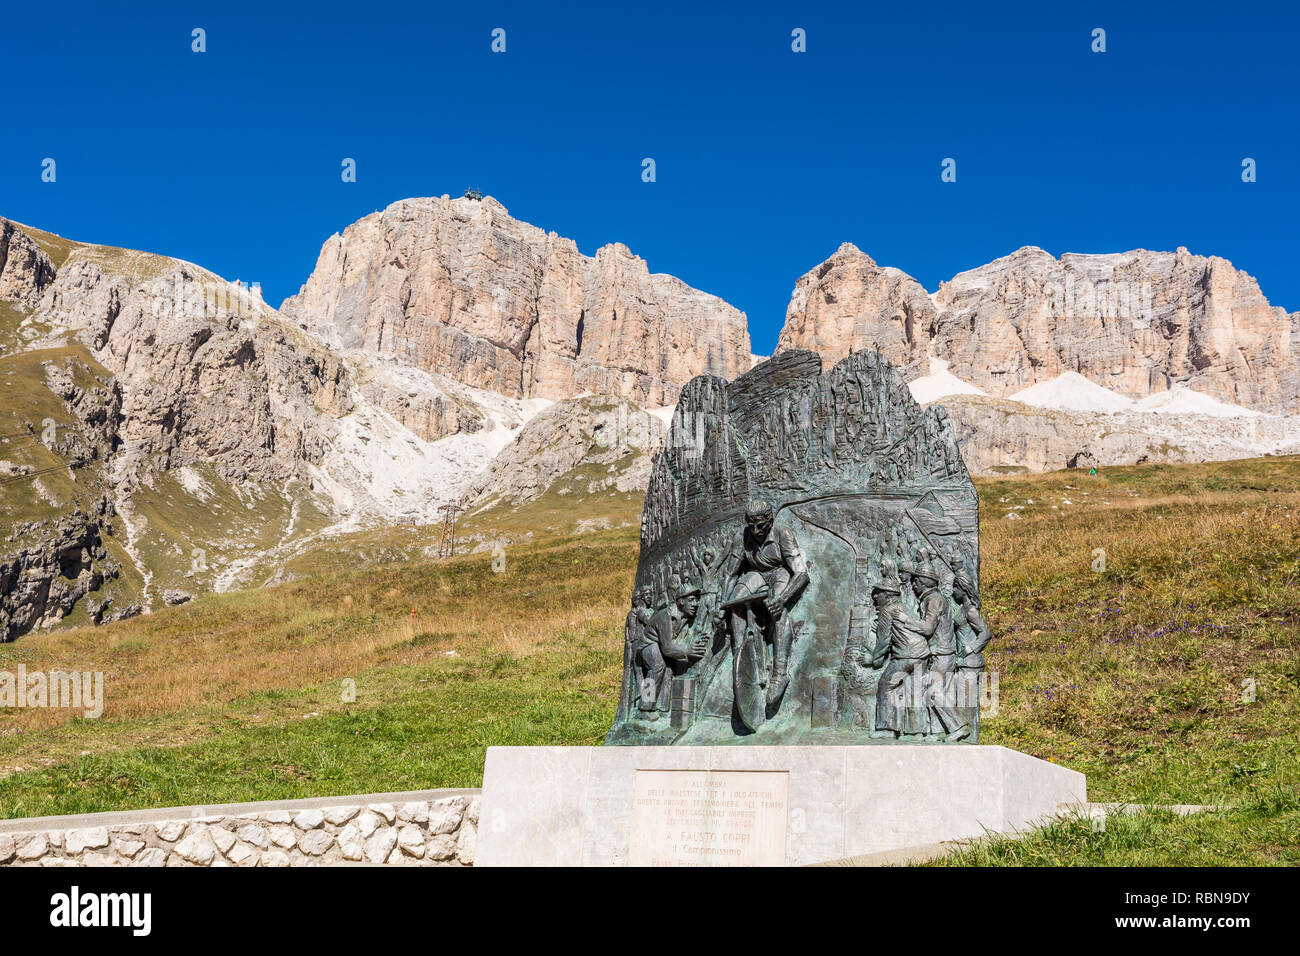 Memoriale al campione di ciclismo Fausto Coppi, Passo Pordoi, Dolomiti, Italia Foto Stock